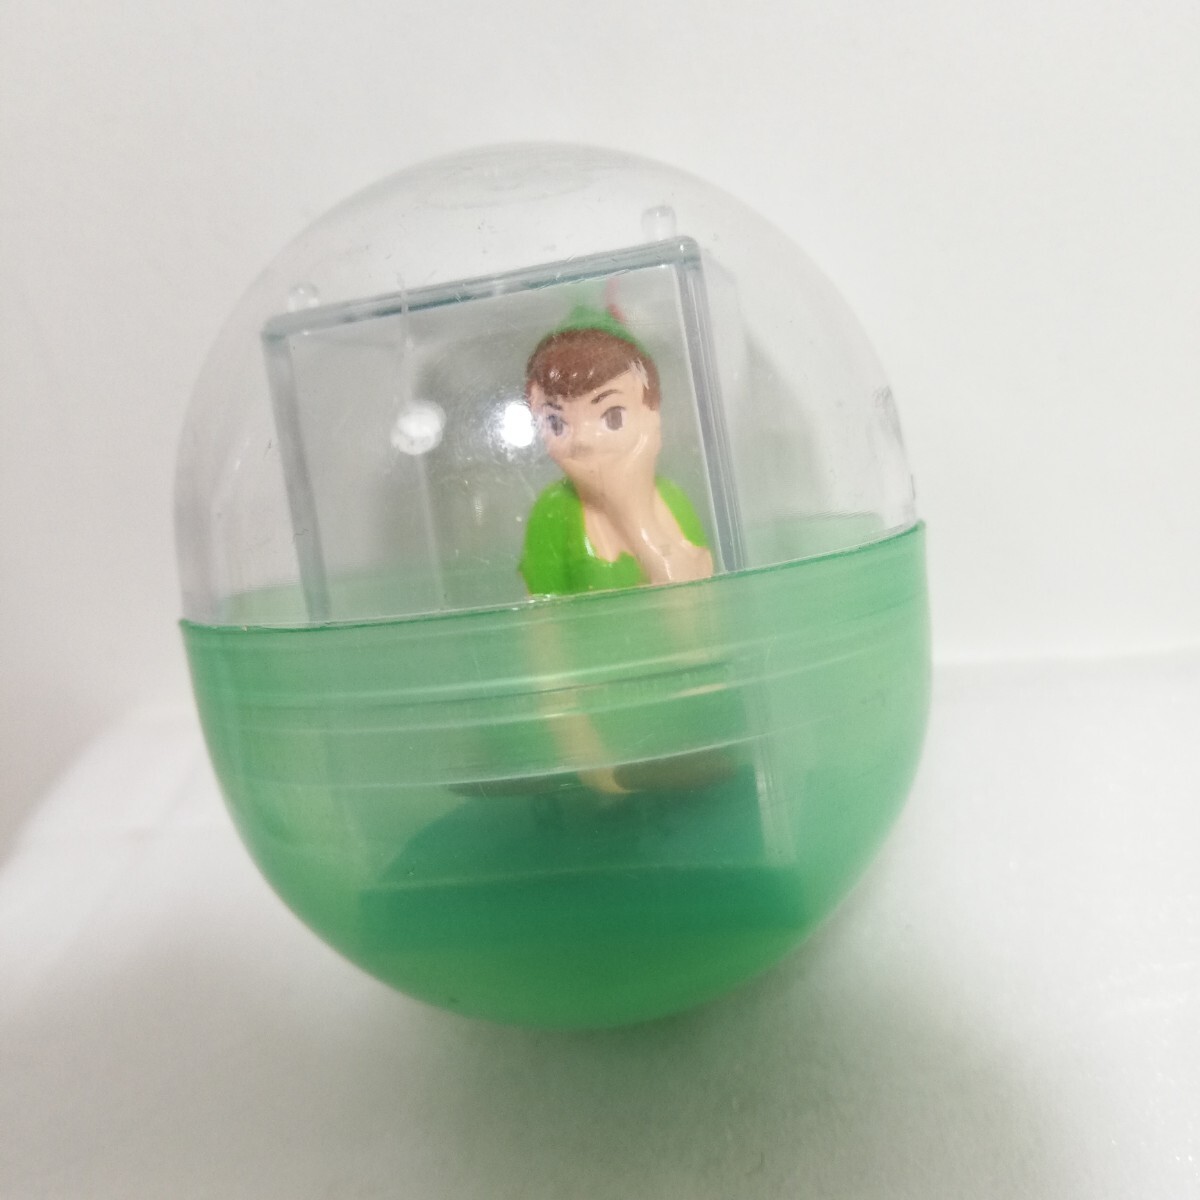 1990s Disney Peter Pan miniature figure Gacha Gacha unused goods [ Vintage goods doll ]